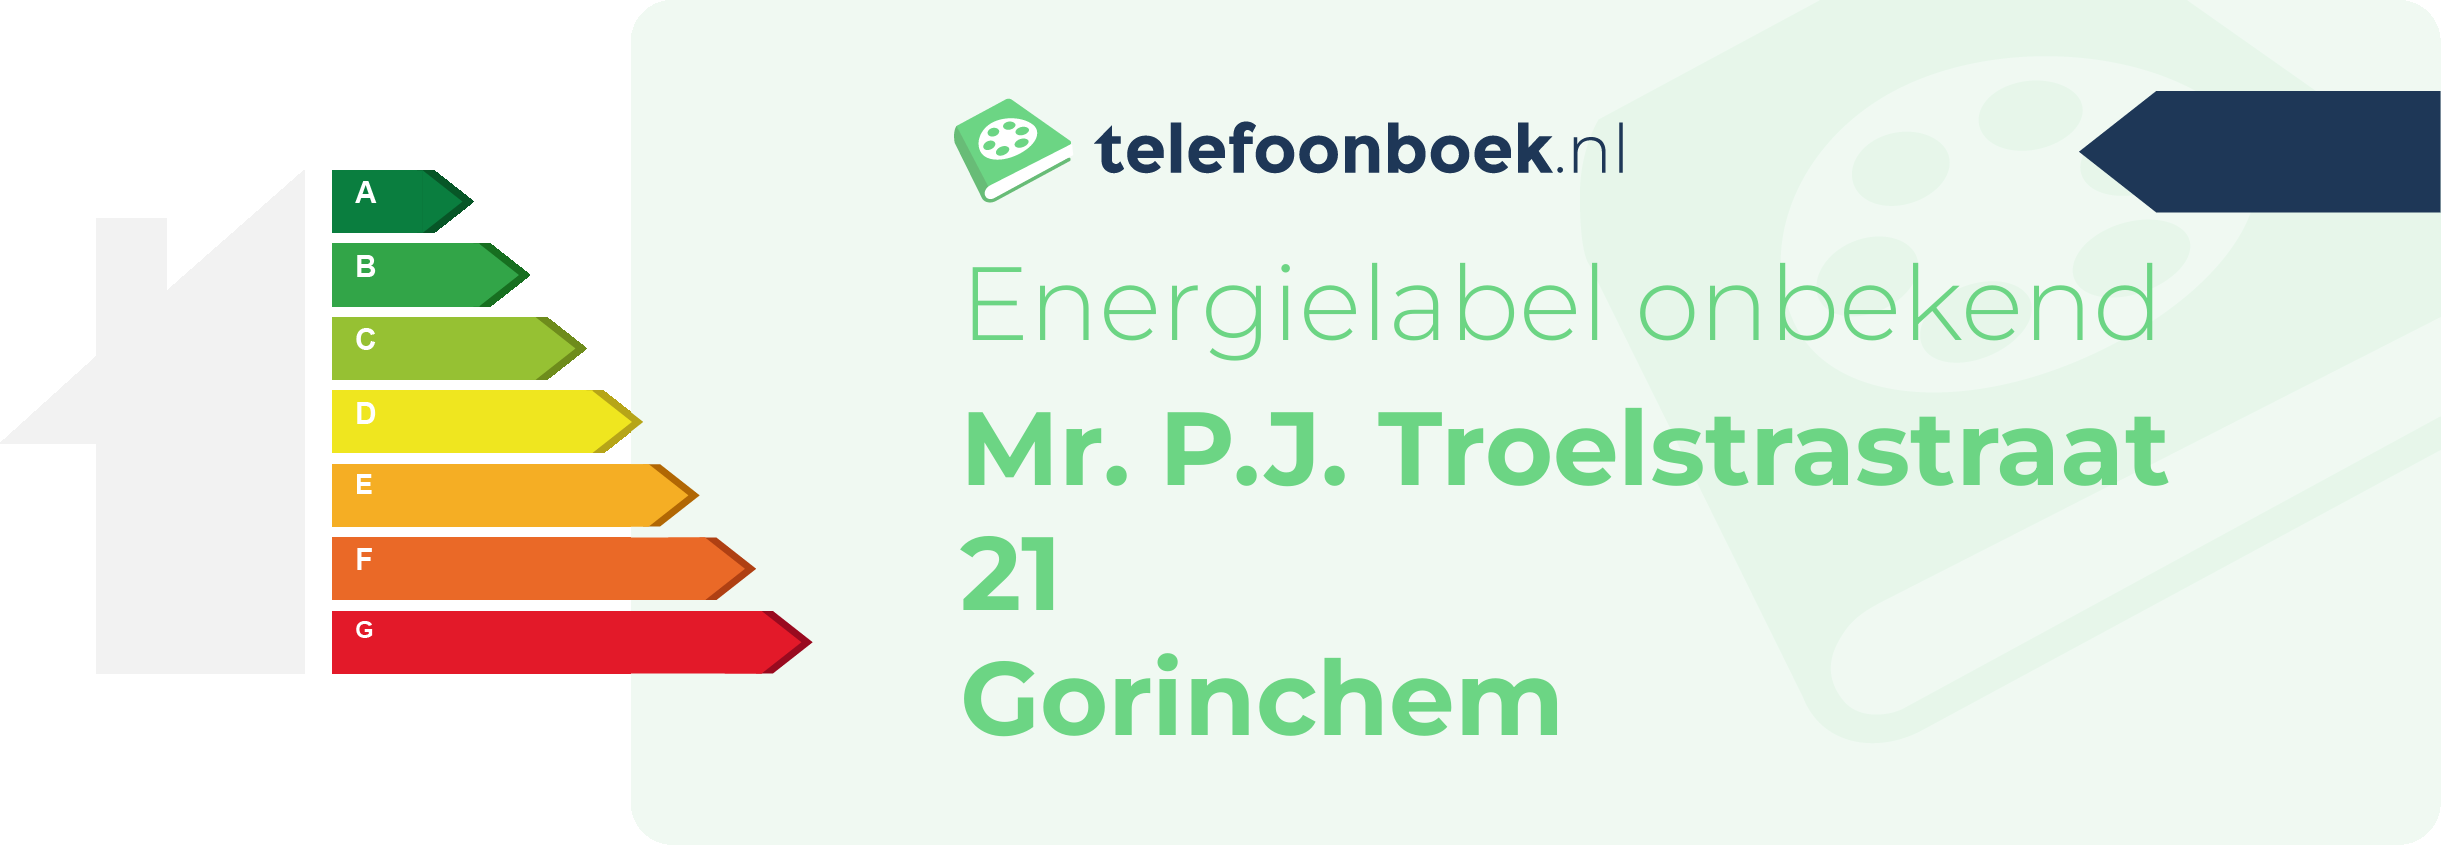 Energielabel Mr. P.J. Troelstrastraat 21 Gorinchem